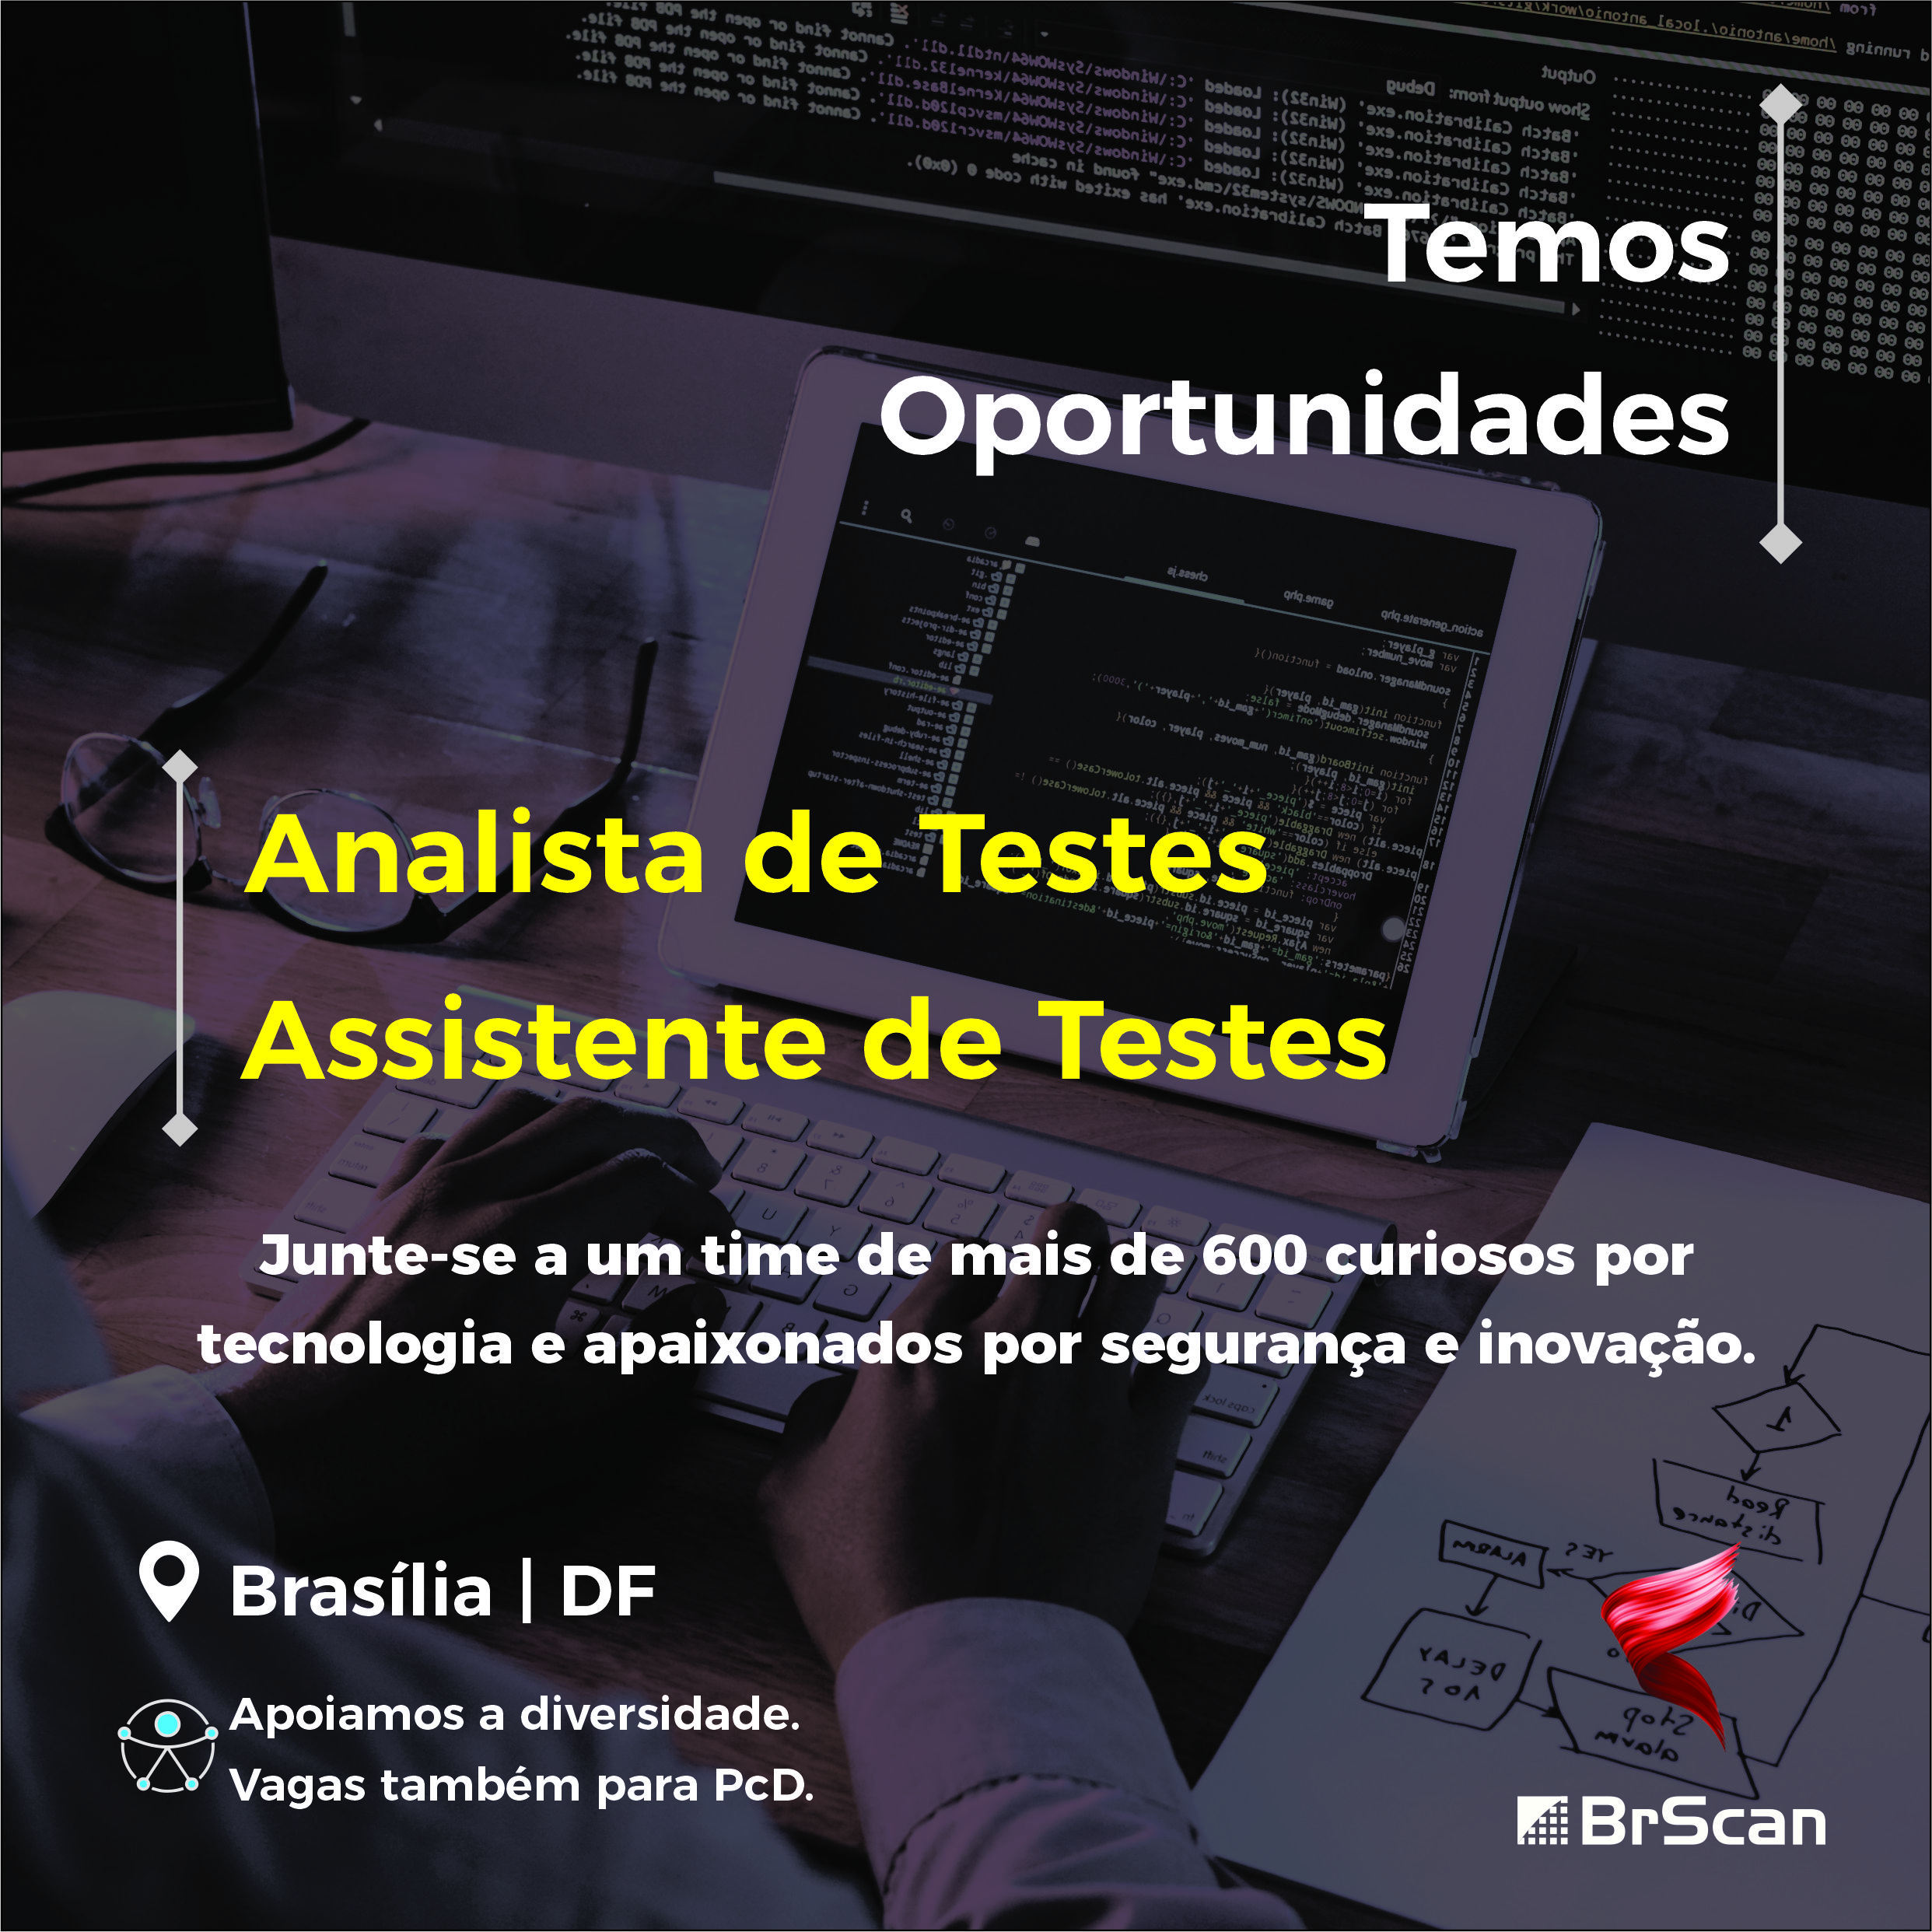 [BrScan] – Oportunidades para Analista e Assistente de Testes